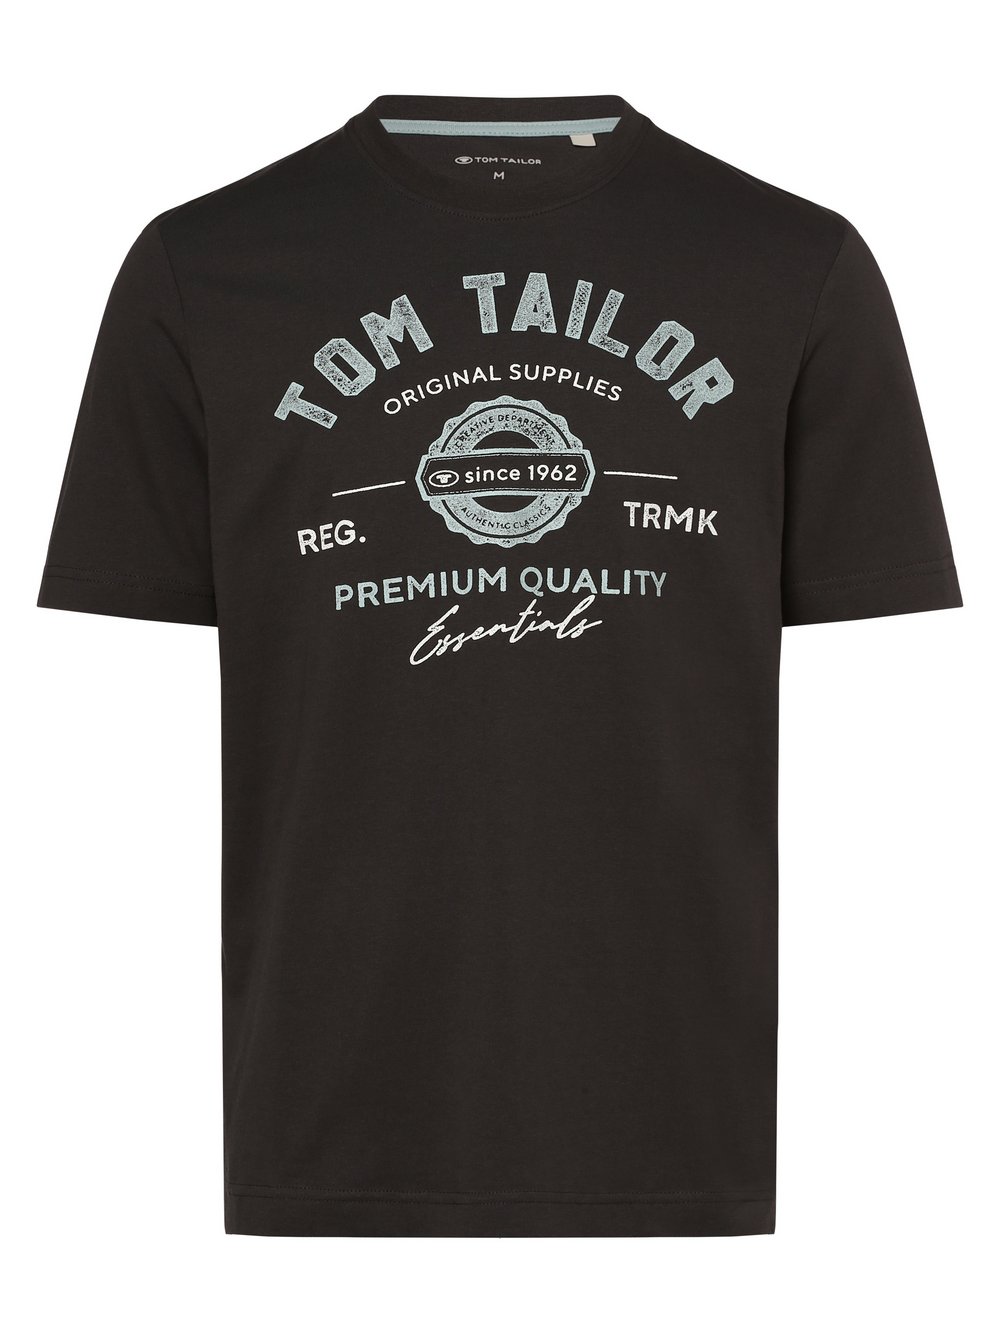 Tom Tailor T-shirt męski Mężczyźni Bawełna szary nadruk, XL